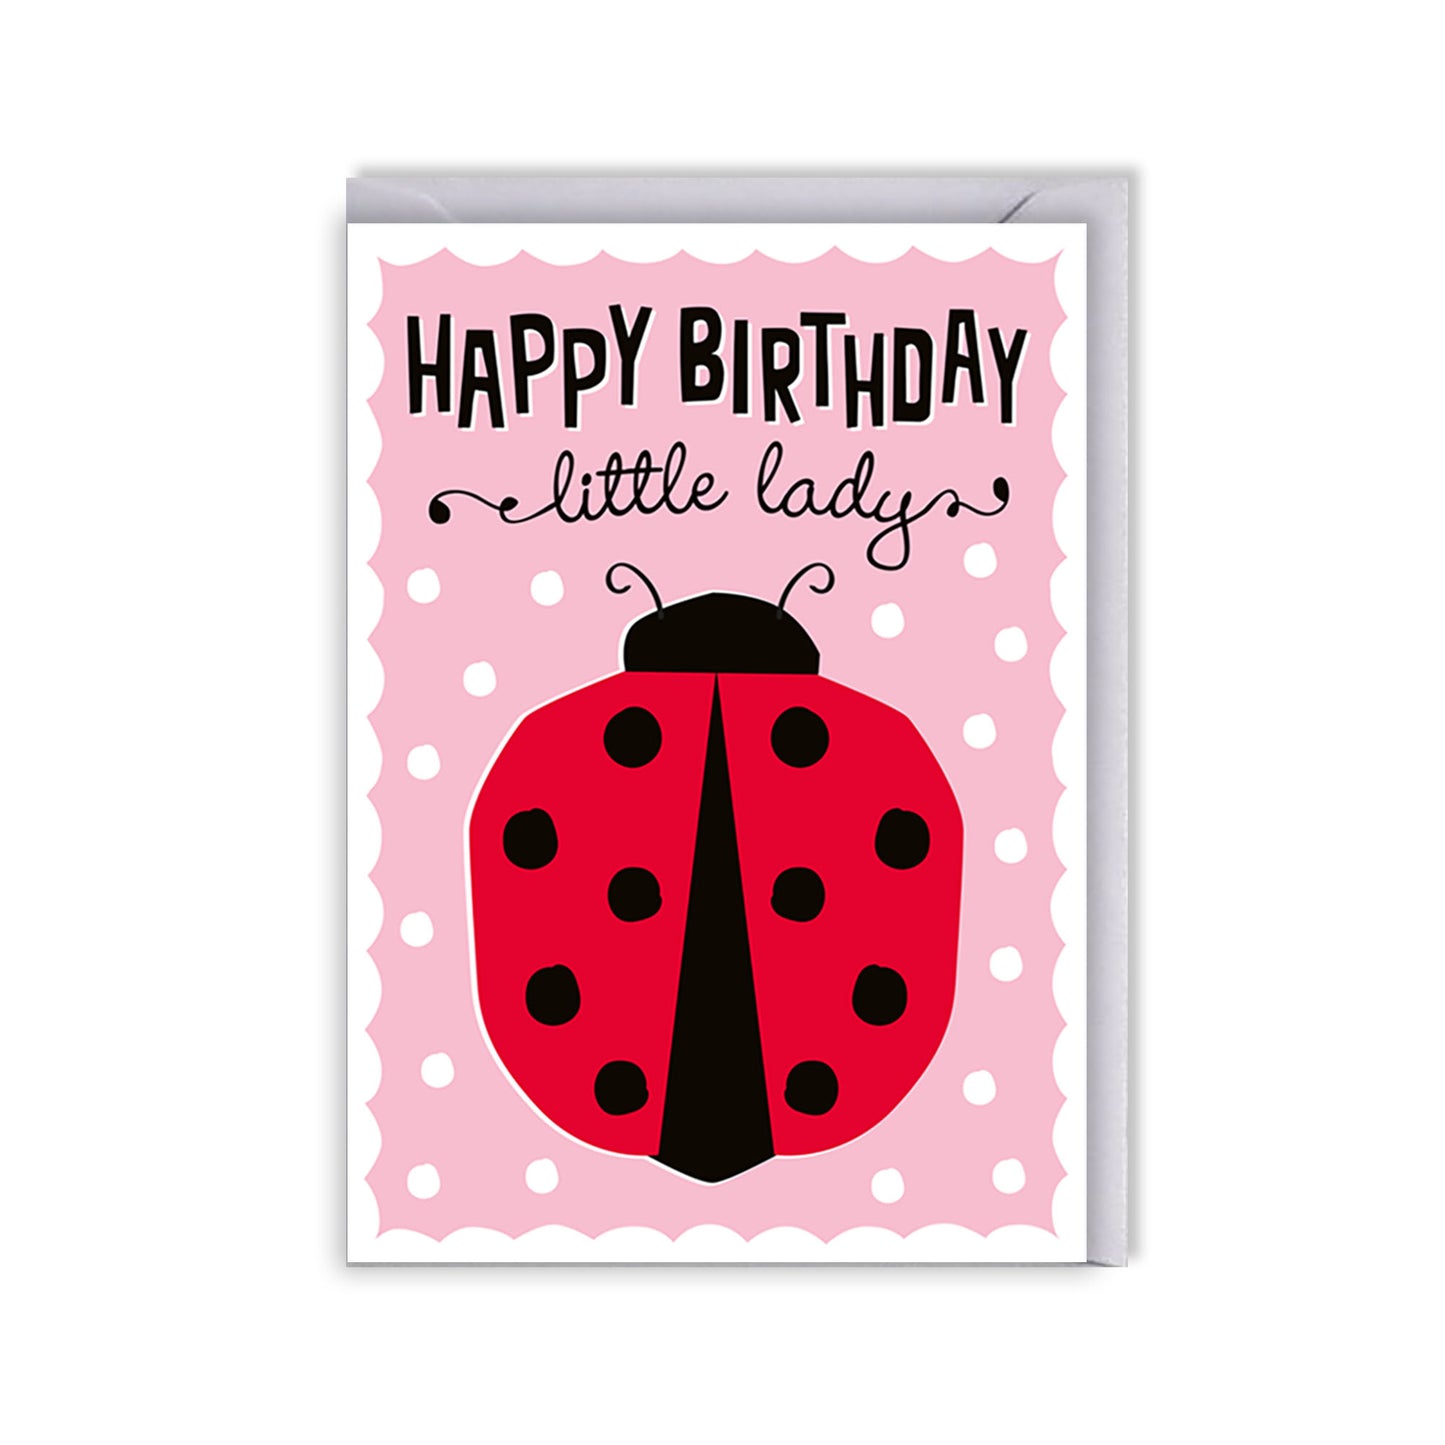 Kids' birthday card - ladybird